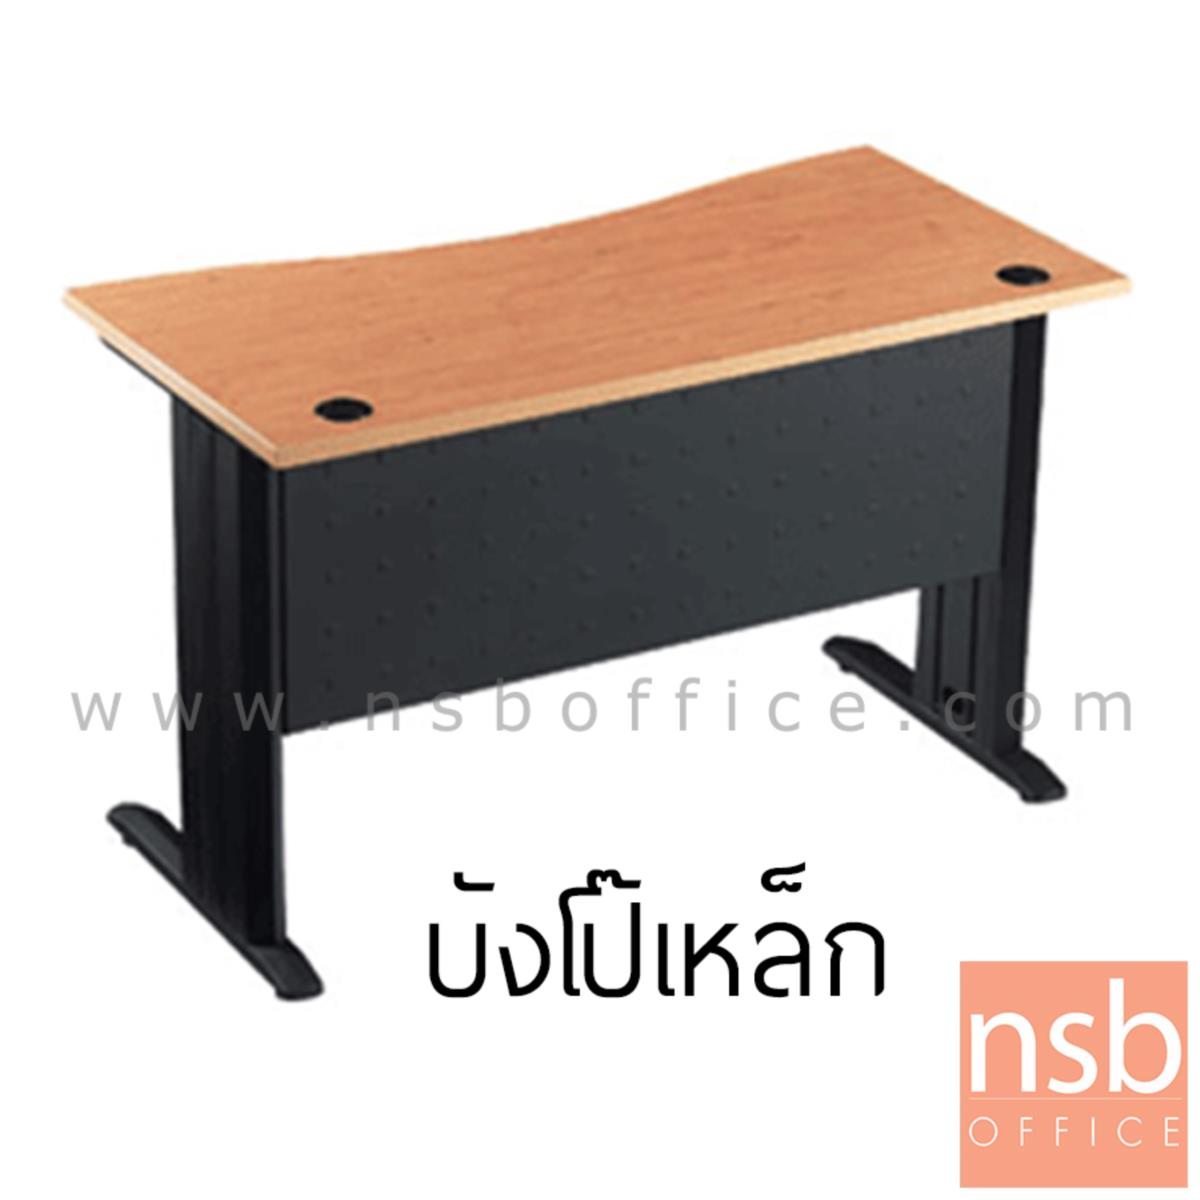 โต๊ะทำงานหน้าโค้งเว้า ขนาด 120W*75H cm. บังโป้เหล็ก รุ่น S-DK-0621  ขาเหล็กตัวแอลสีดำ